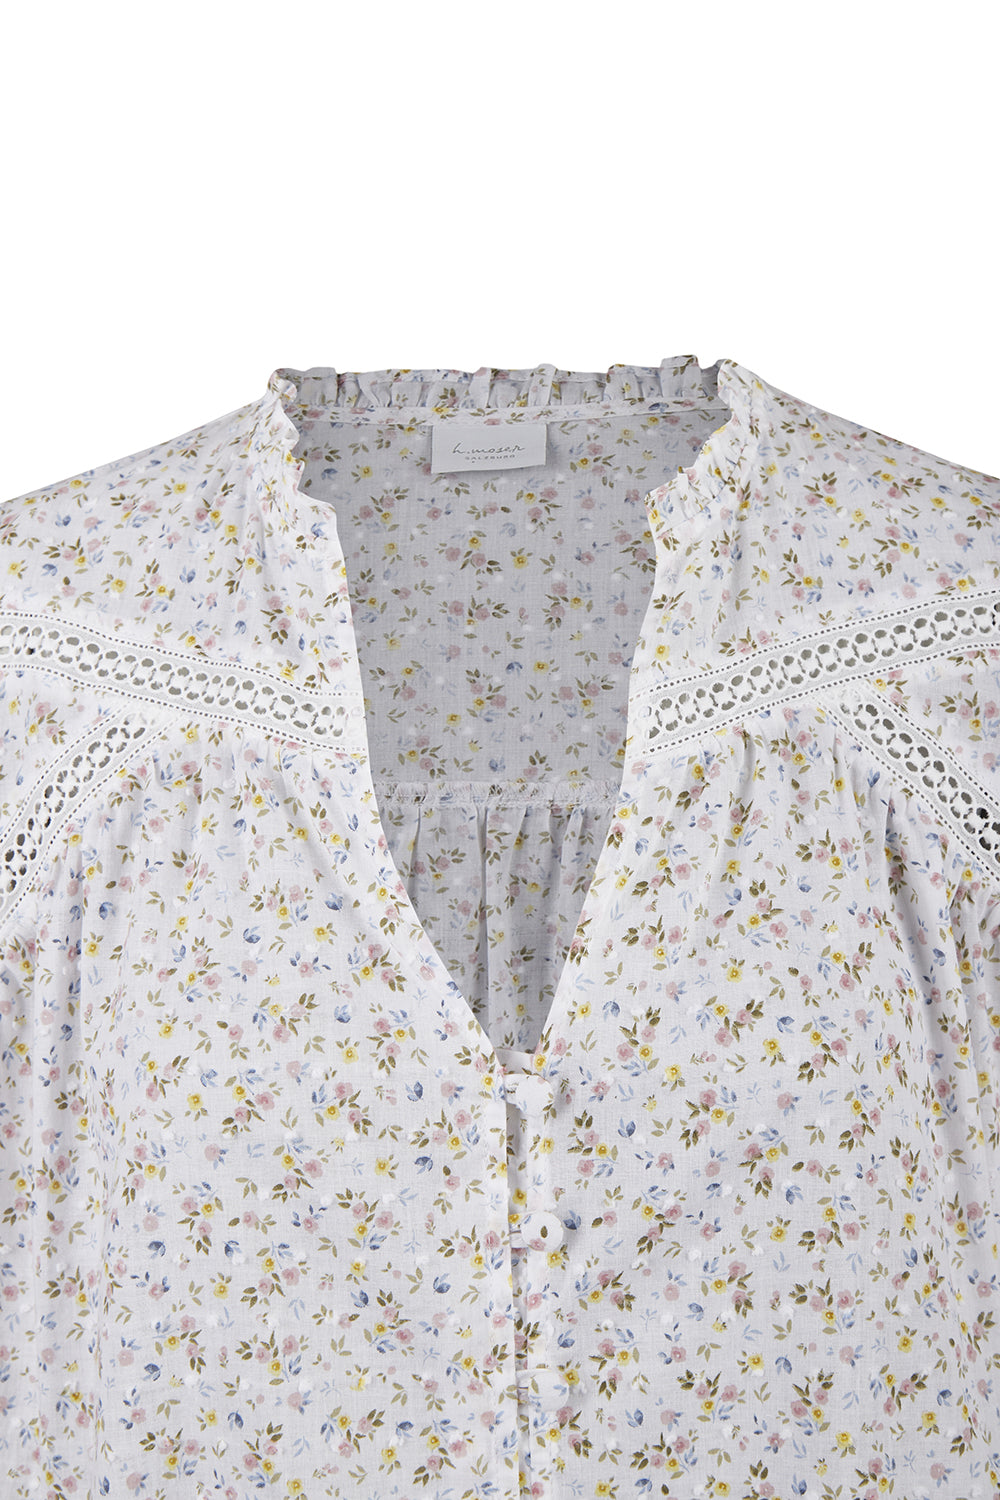 Women's blouse Beatrix